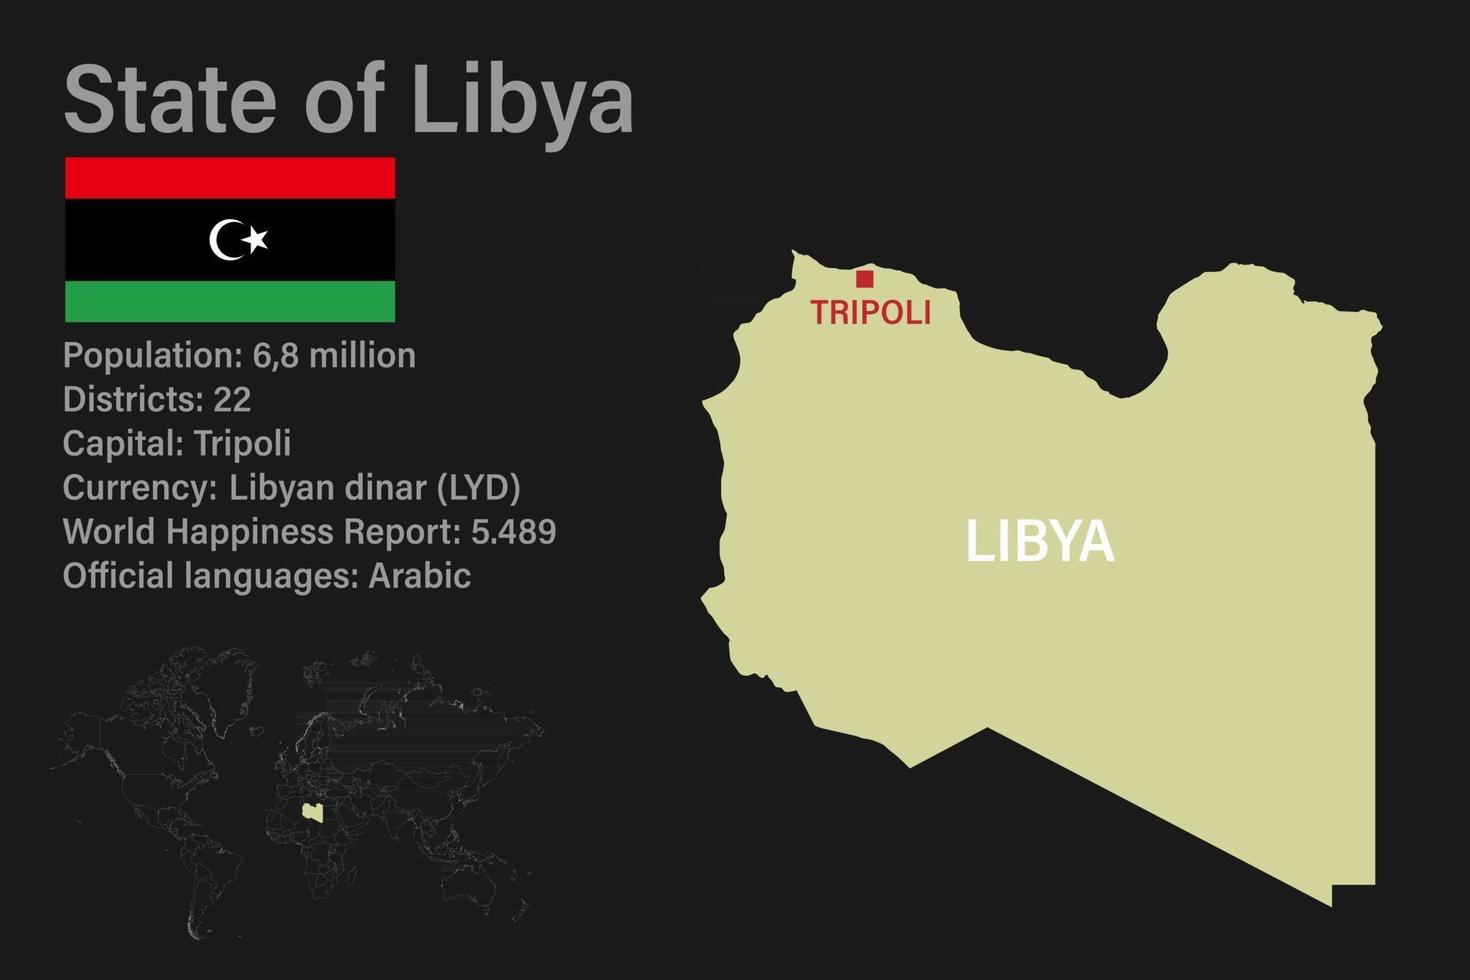 hochdetaillierte Libyen-Karte mit Flagge, Hauptstadt und kleiner Weltkarte vektor